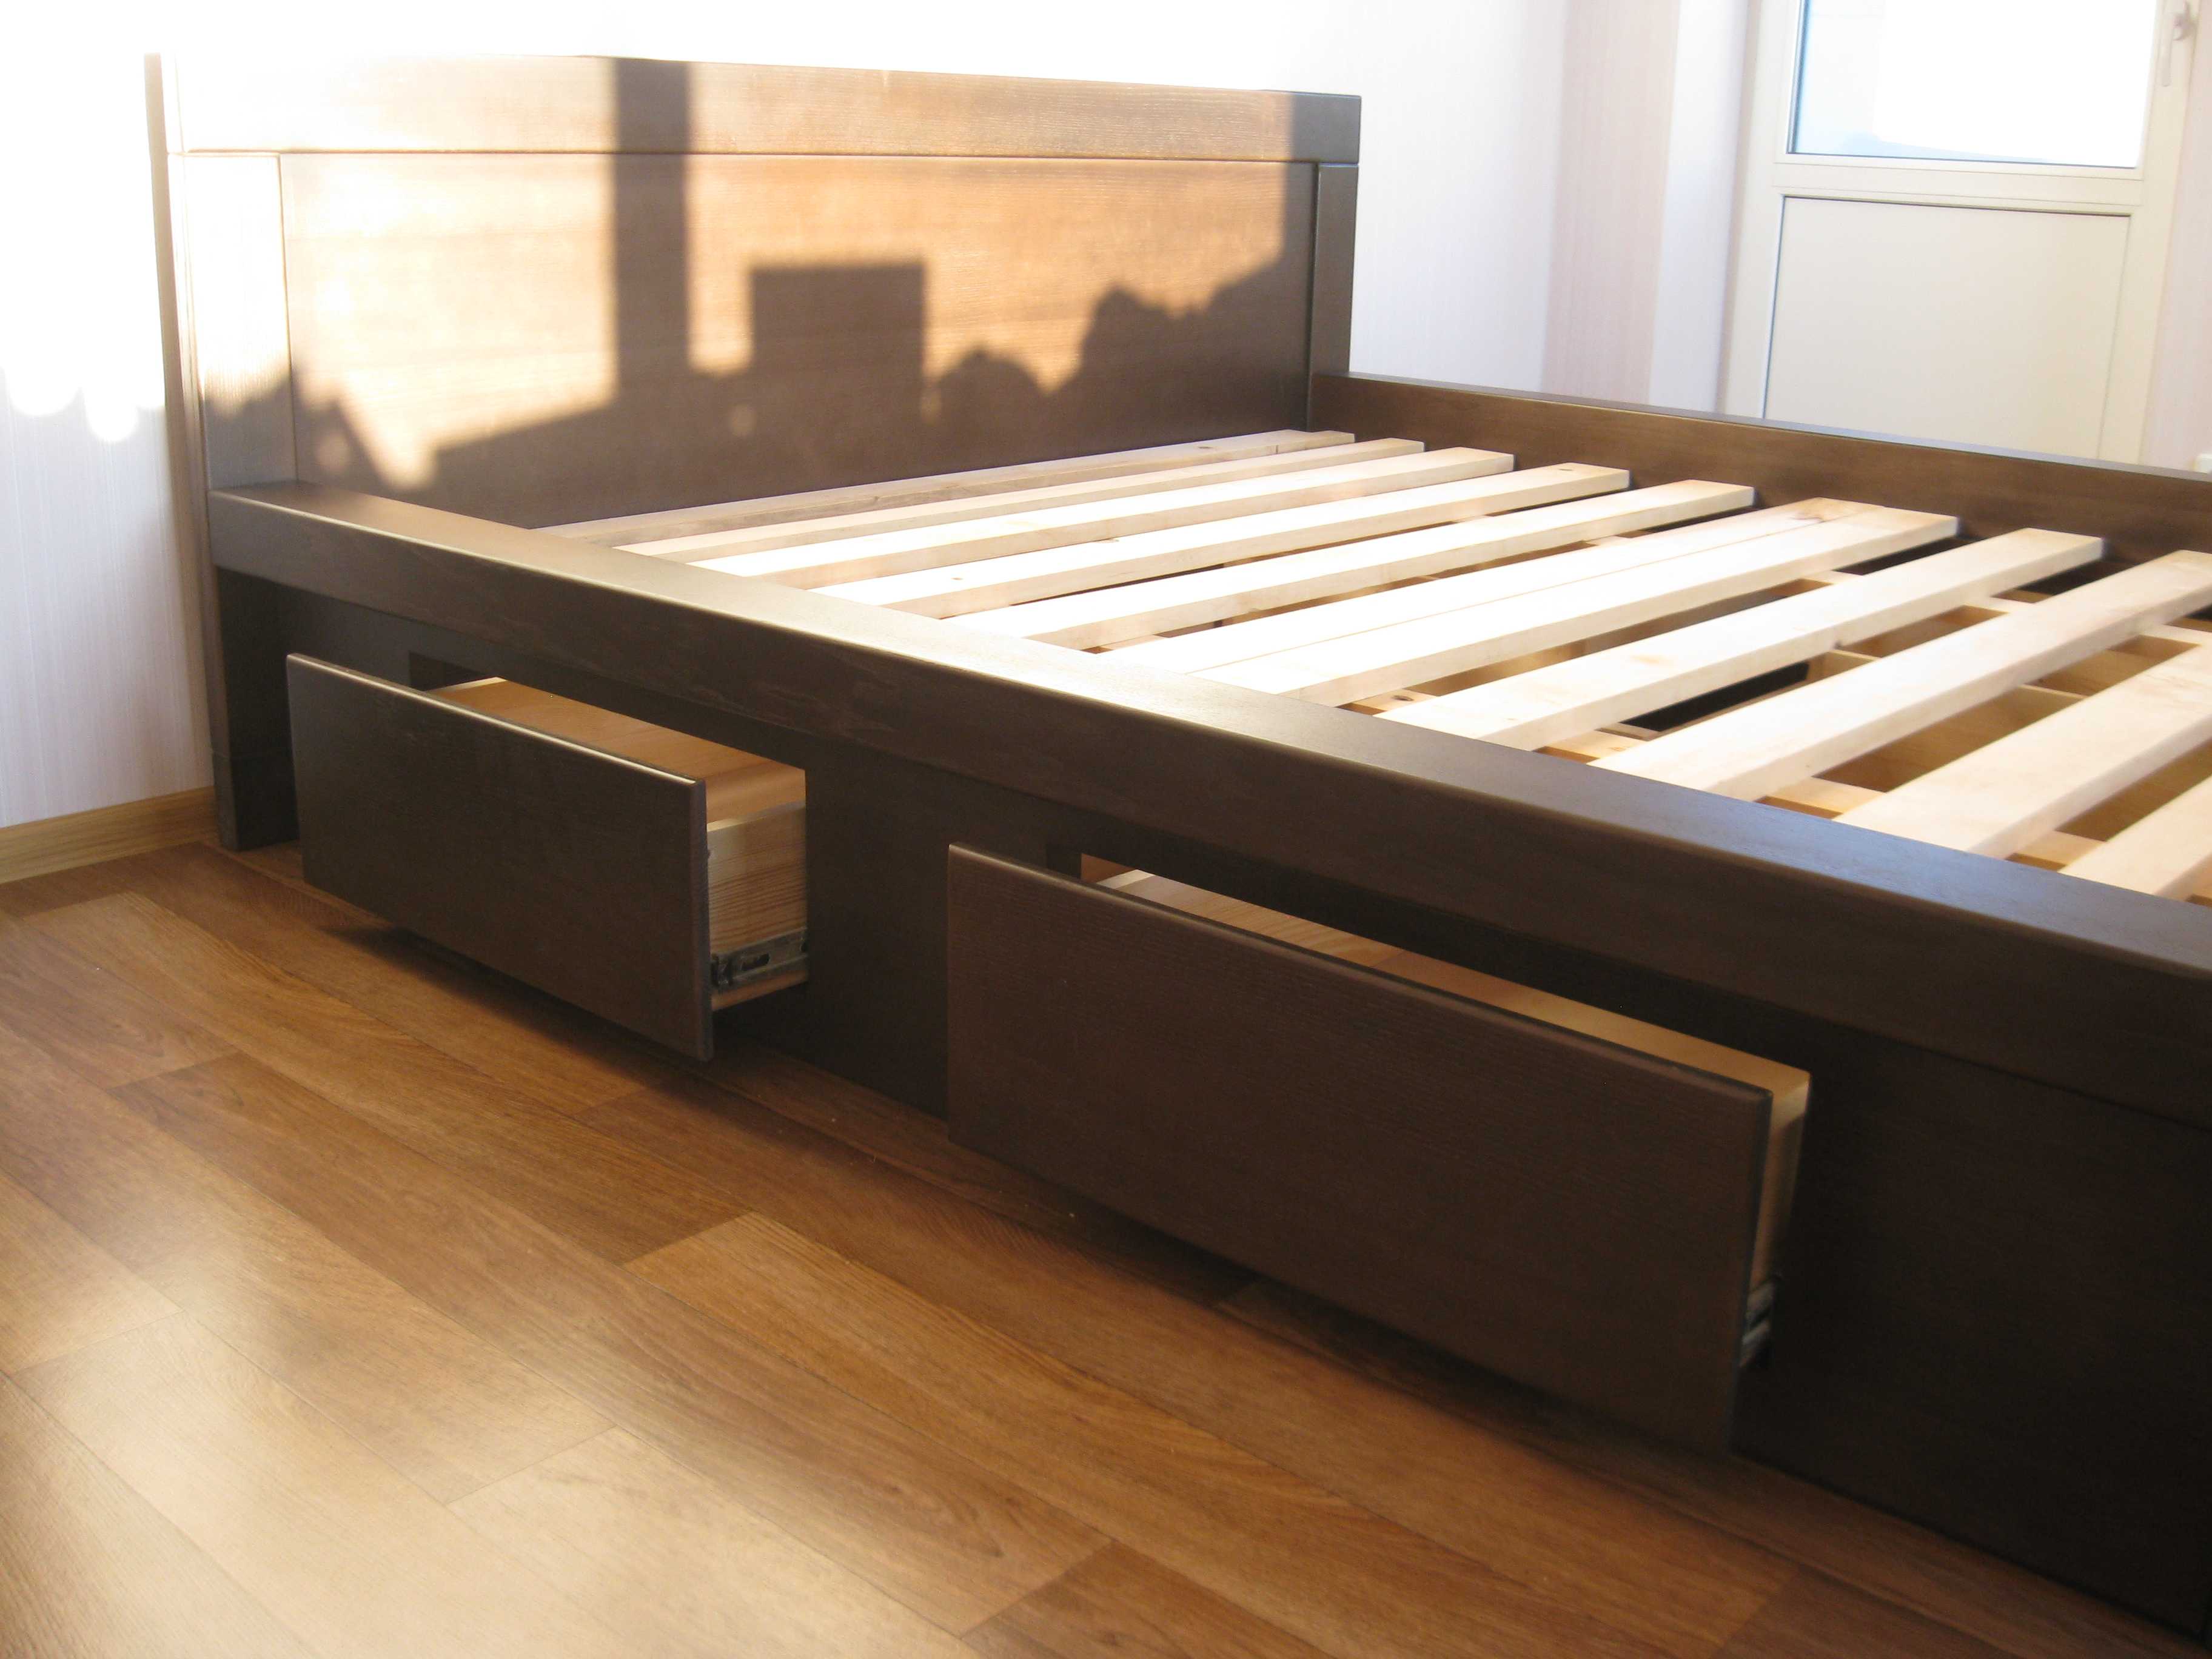 Описание кроватей с выдвижными ящиками — особенности и устройство